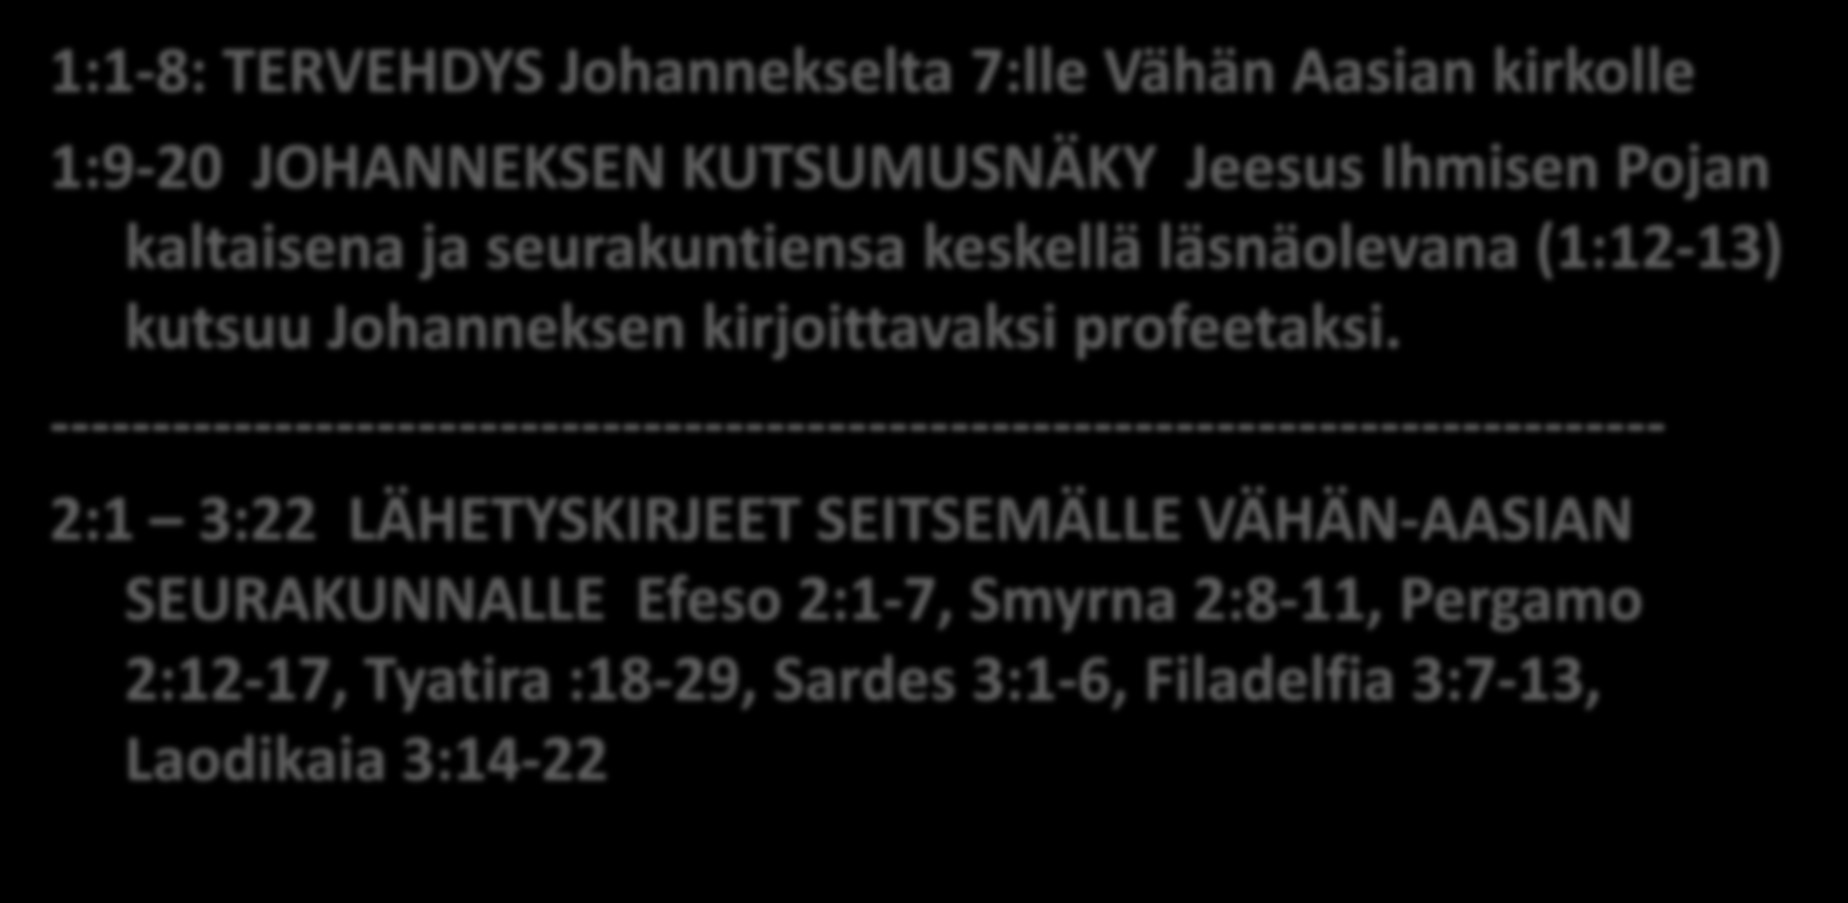 Ilmestyskirjan alku 1:1-8: TERVEHDYS Johannekselta 7:lle Vähän Aasian kirkolle 1:9-20 JOHANNEKSEN KUTSUMUSNÄKY Jeesus Ihmisen Pojan kaltaisena ja seurakuntiensa keskellä läsnäolevana (1:12-13) kutsuu